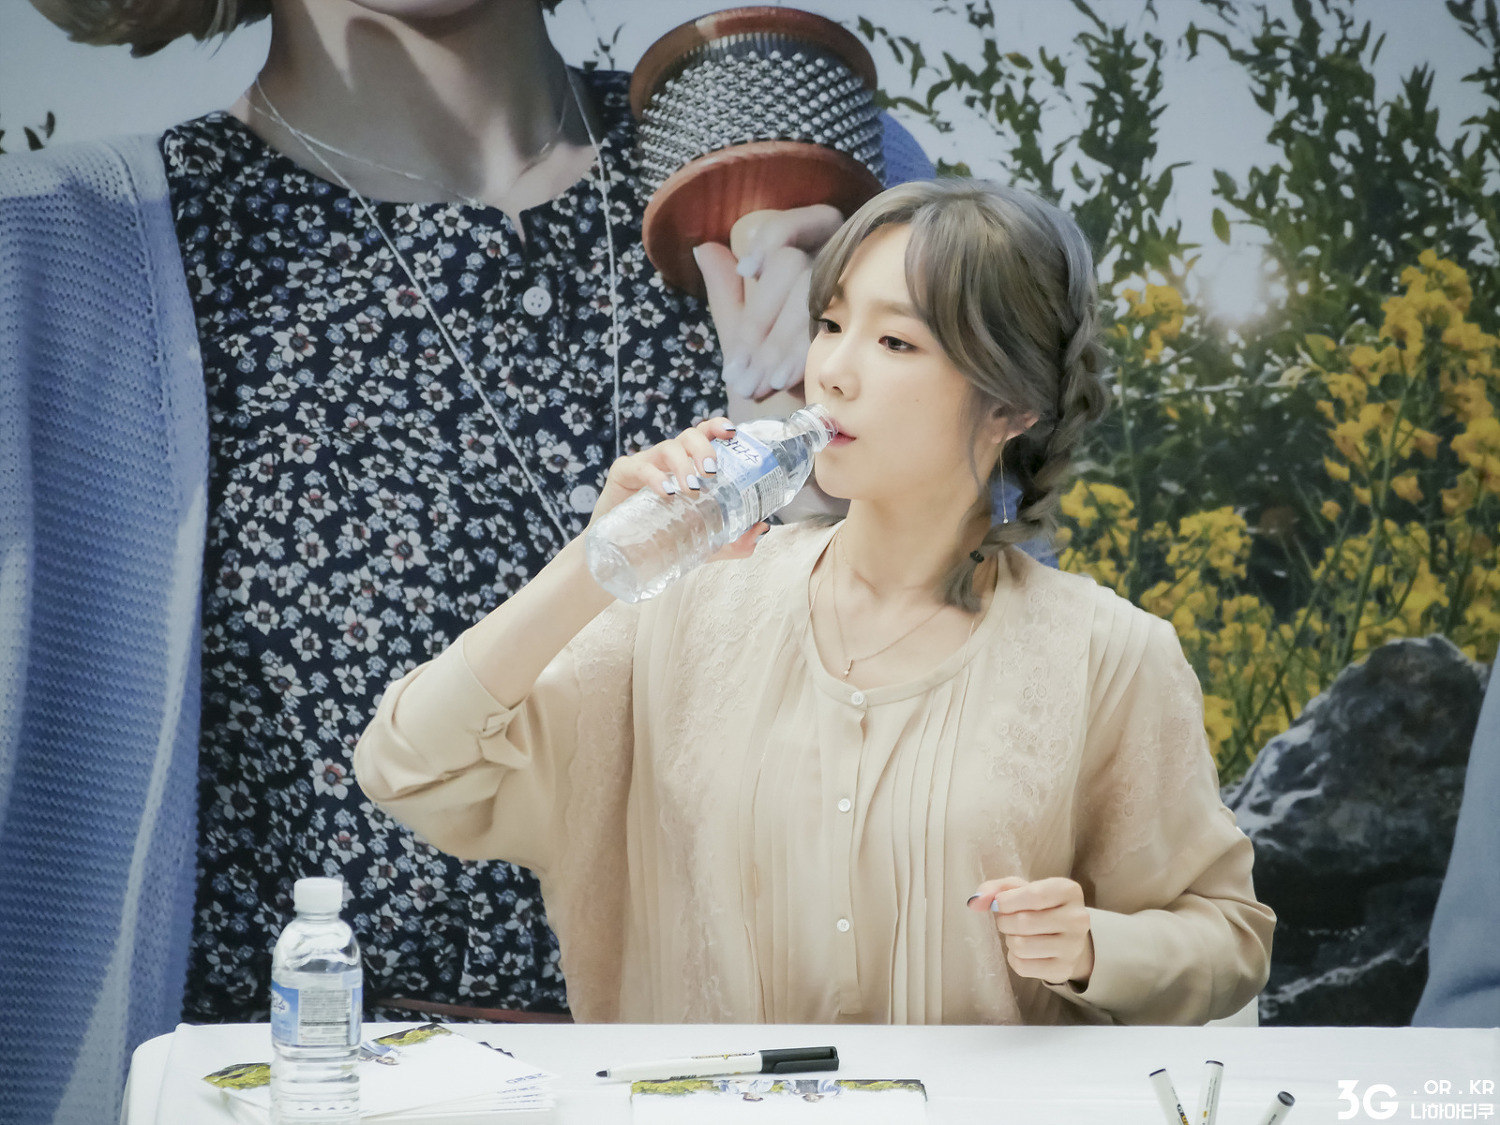 [PIC][23-09-2016]TaeYeon tham dự buổi Fansign cho thương hiệu nước uống "SAMDASOO" tại COEX Live Plaza vào tối nay - Page 8 2217584257E6AEE121A276